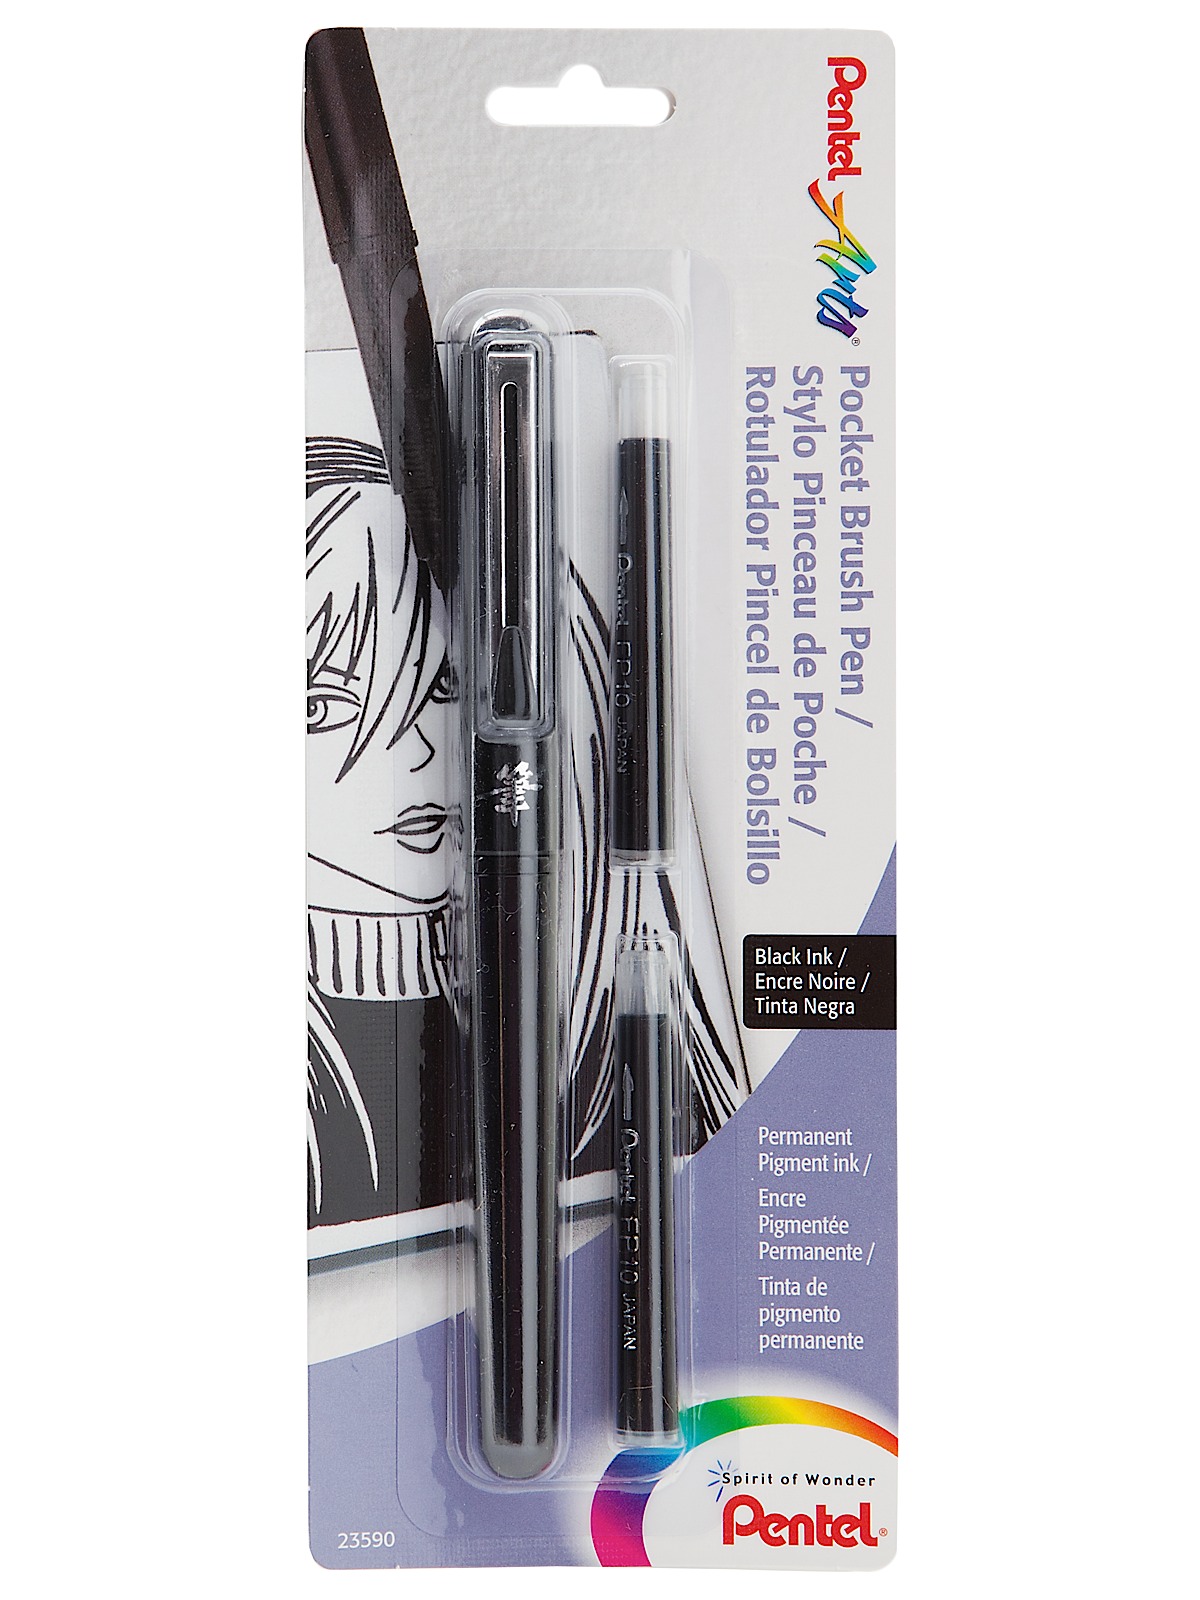 Pocket Brush Pen Brush Pen With 2 Refills Black